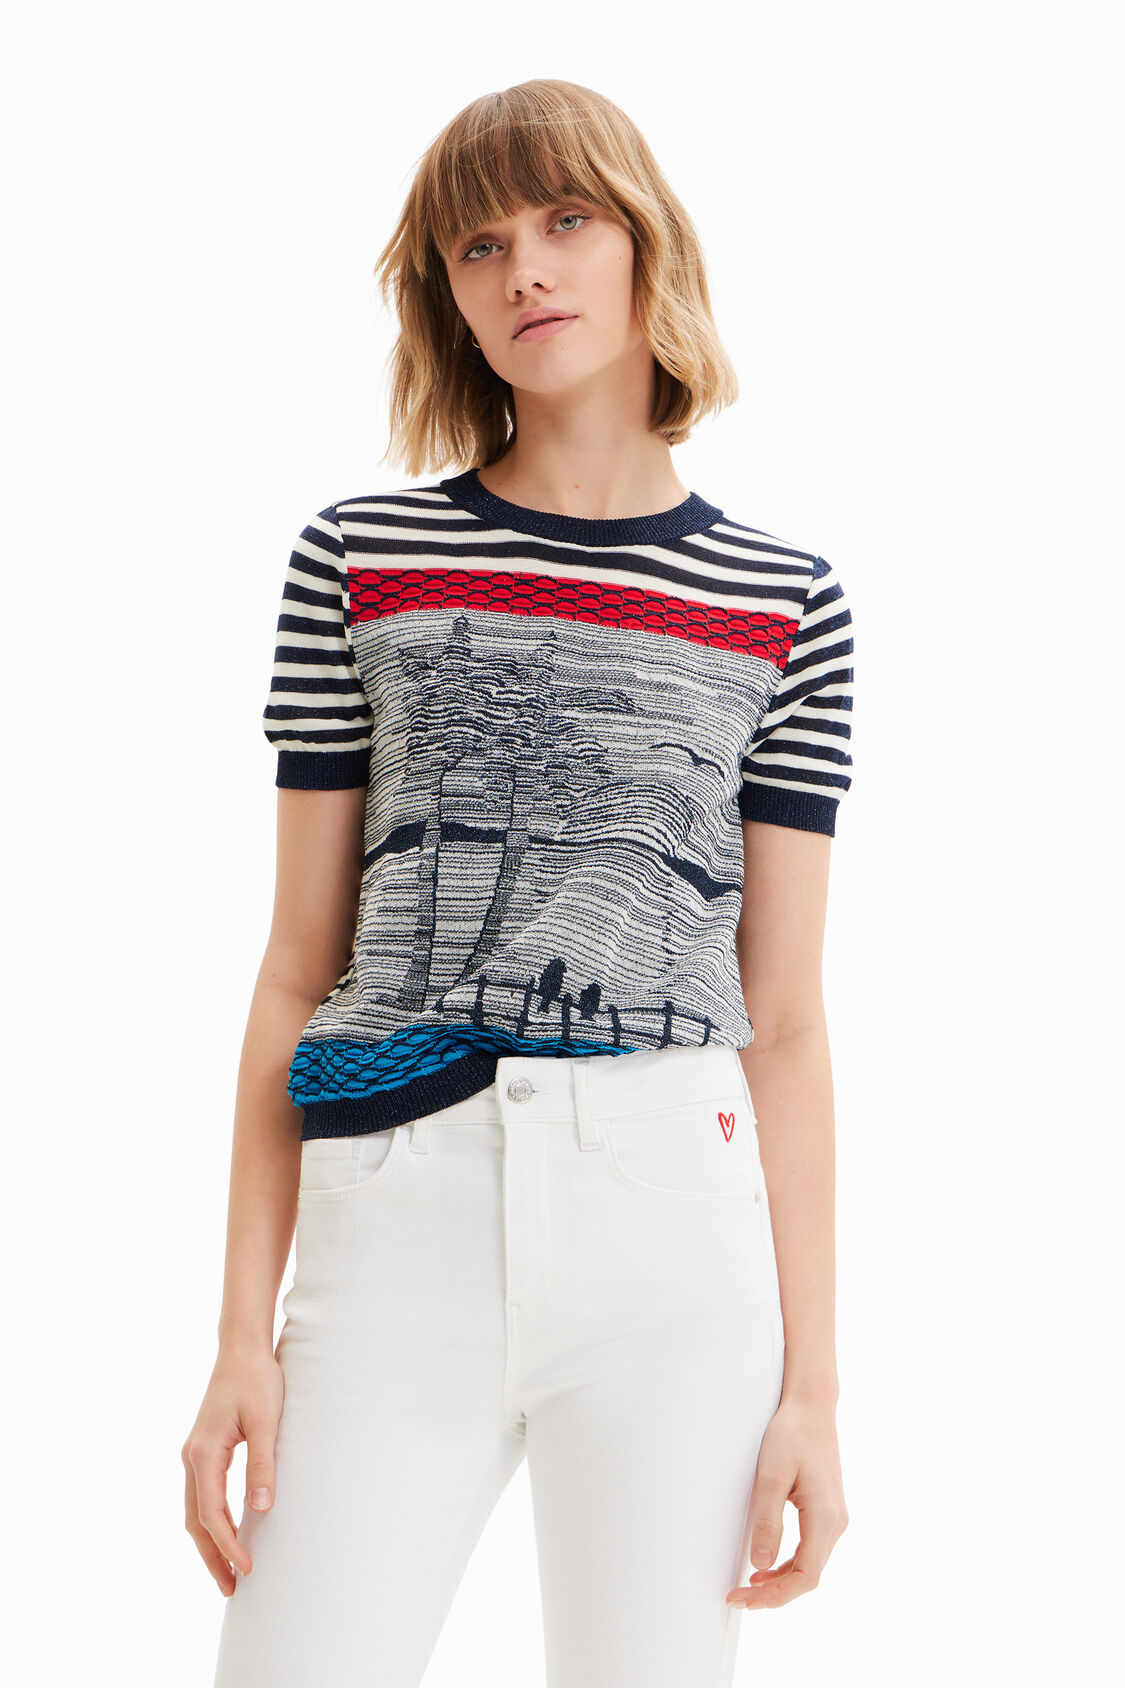 Camiseta marinera de mujer I Desigual.com